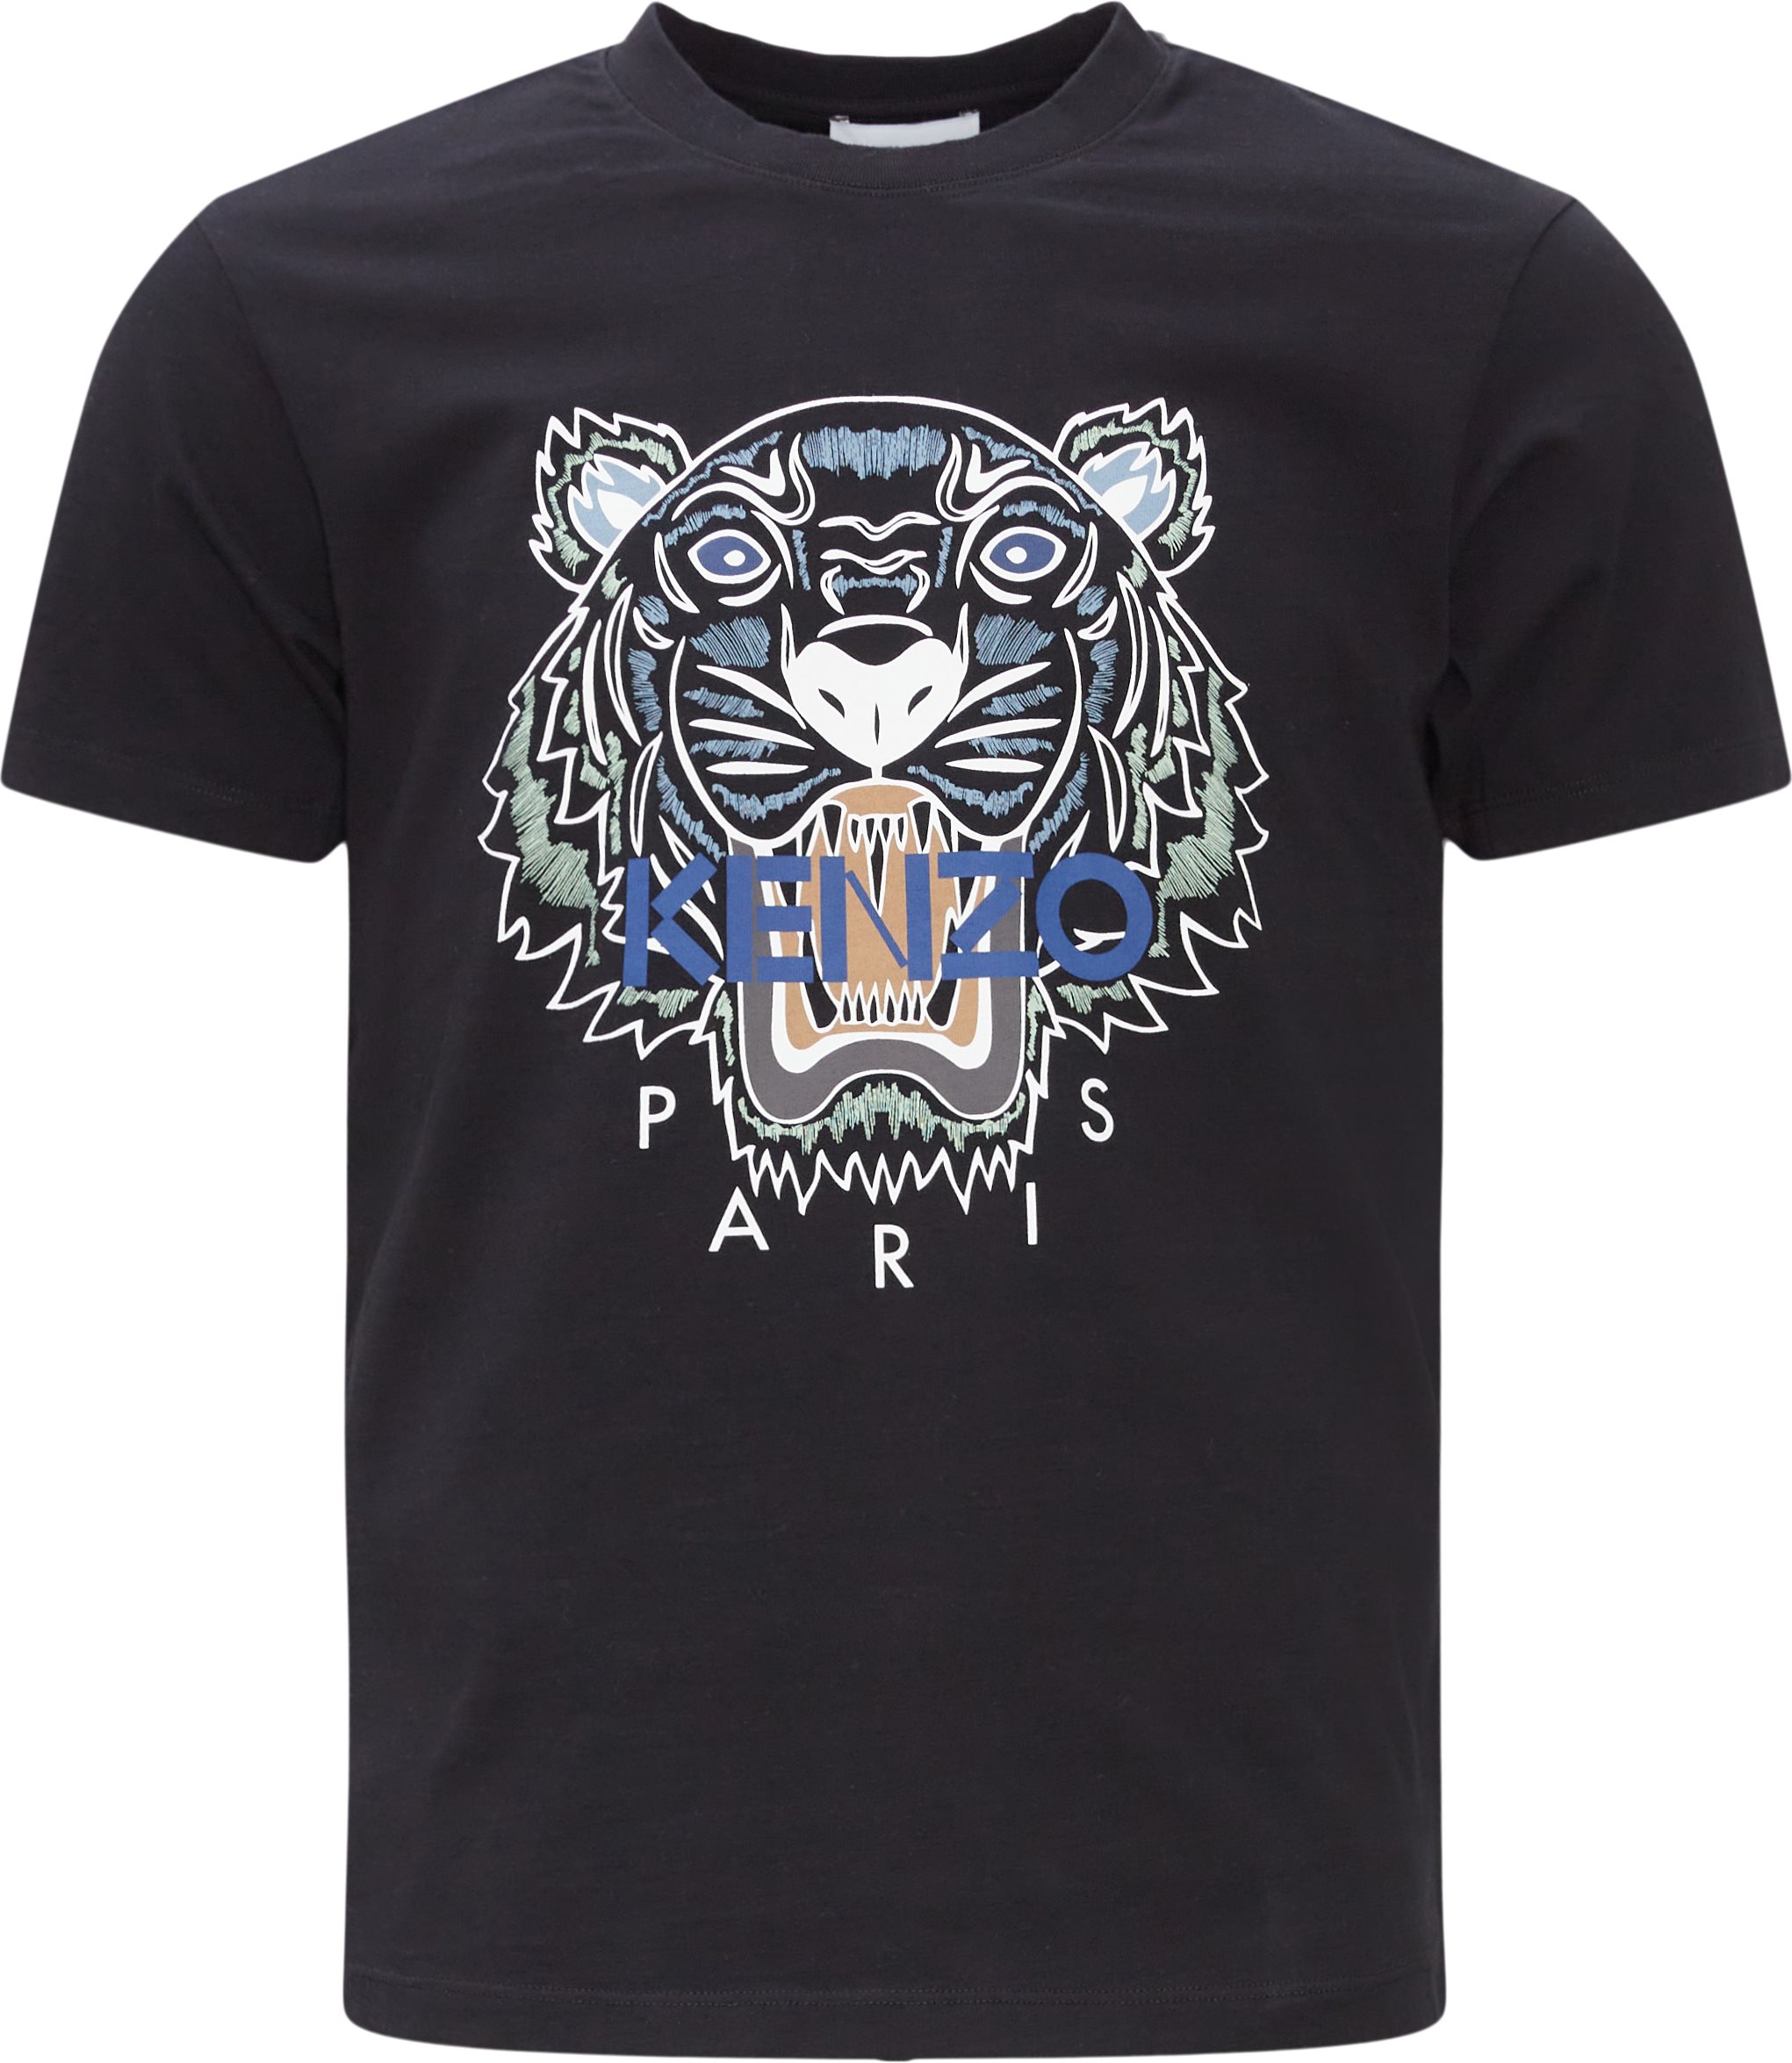 Tiger Print Tee - T-shirts - Regular fit - Black